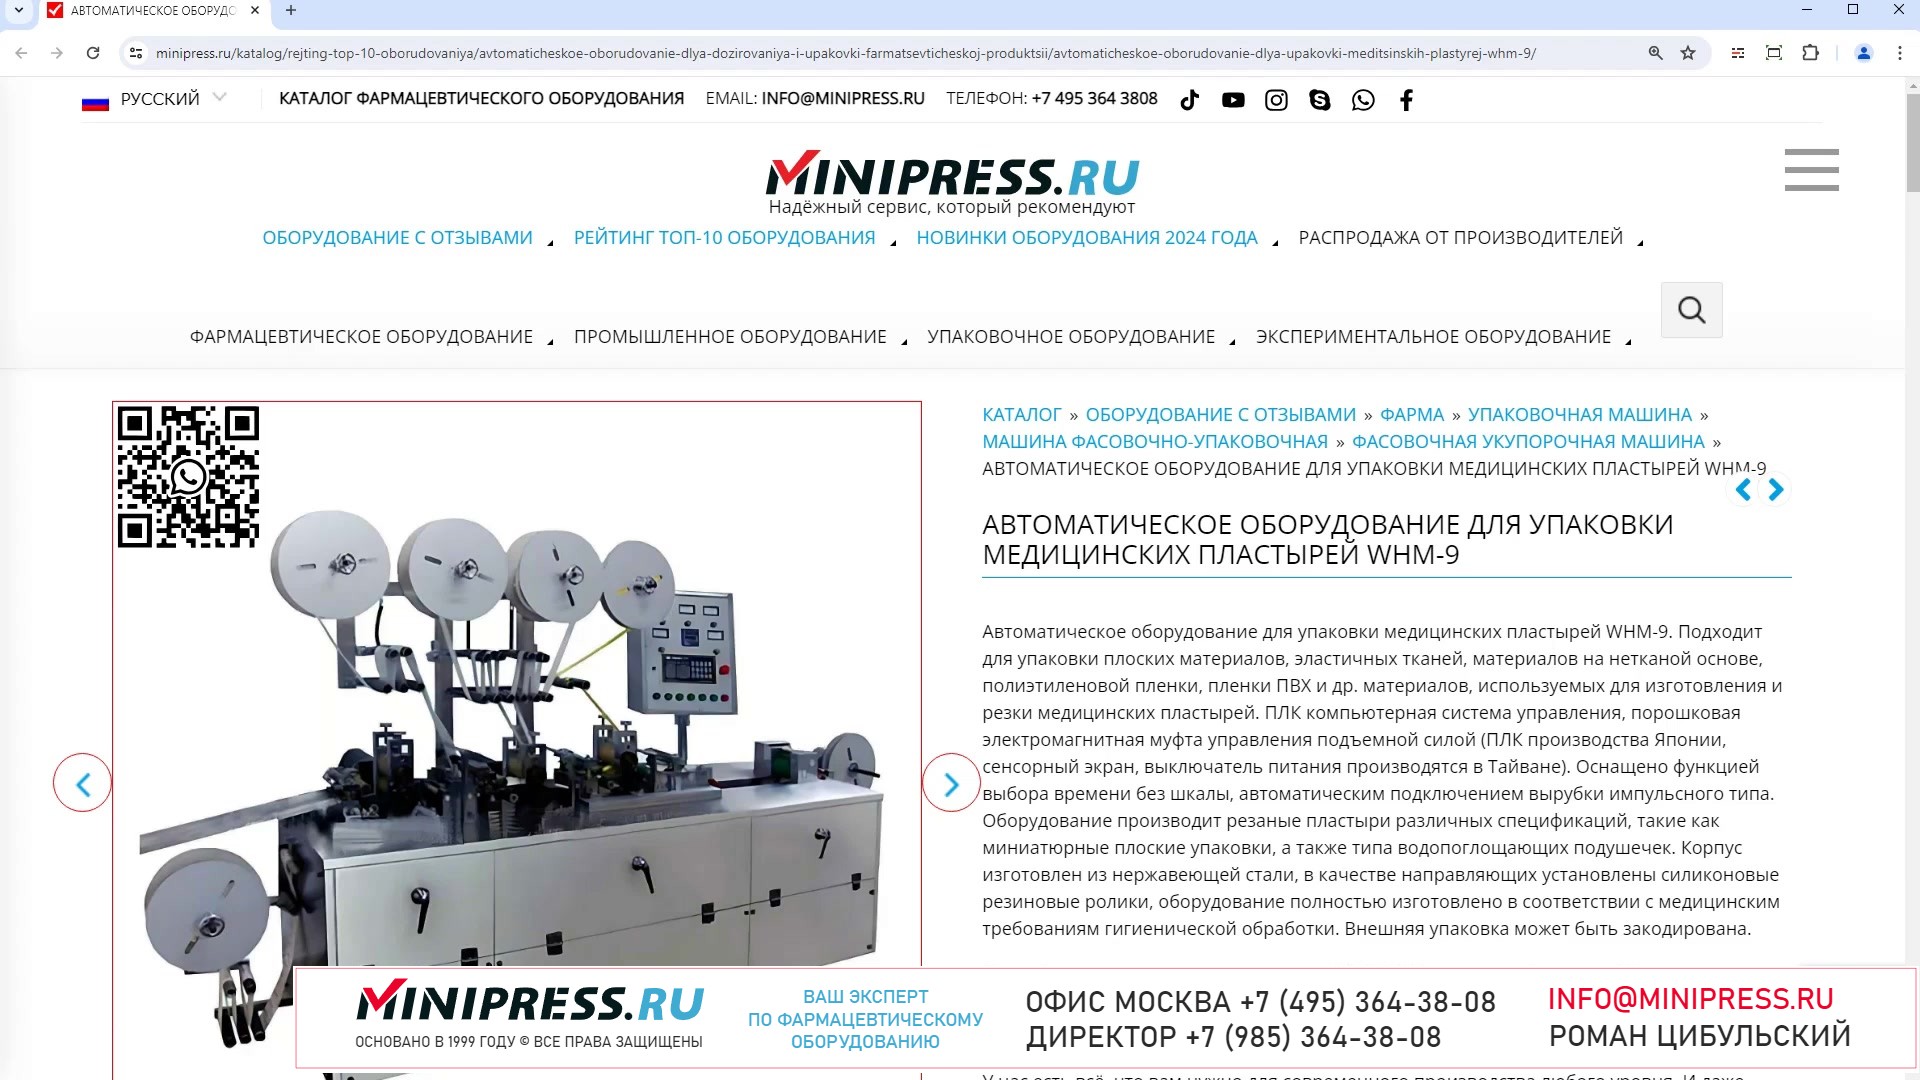 Minipress.ru Автоматическое оборудование для упаковки медицинских пластырей WHM-9